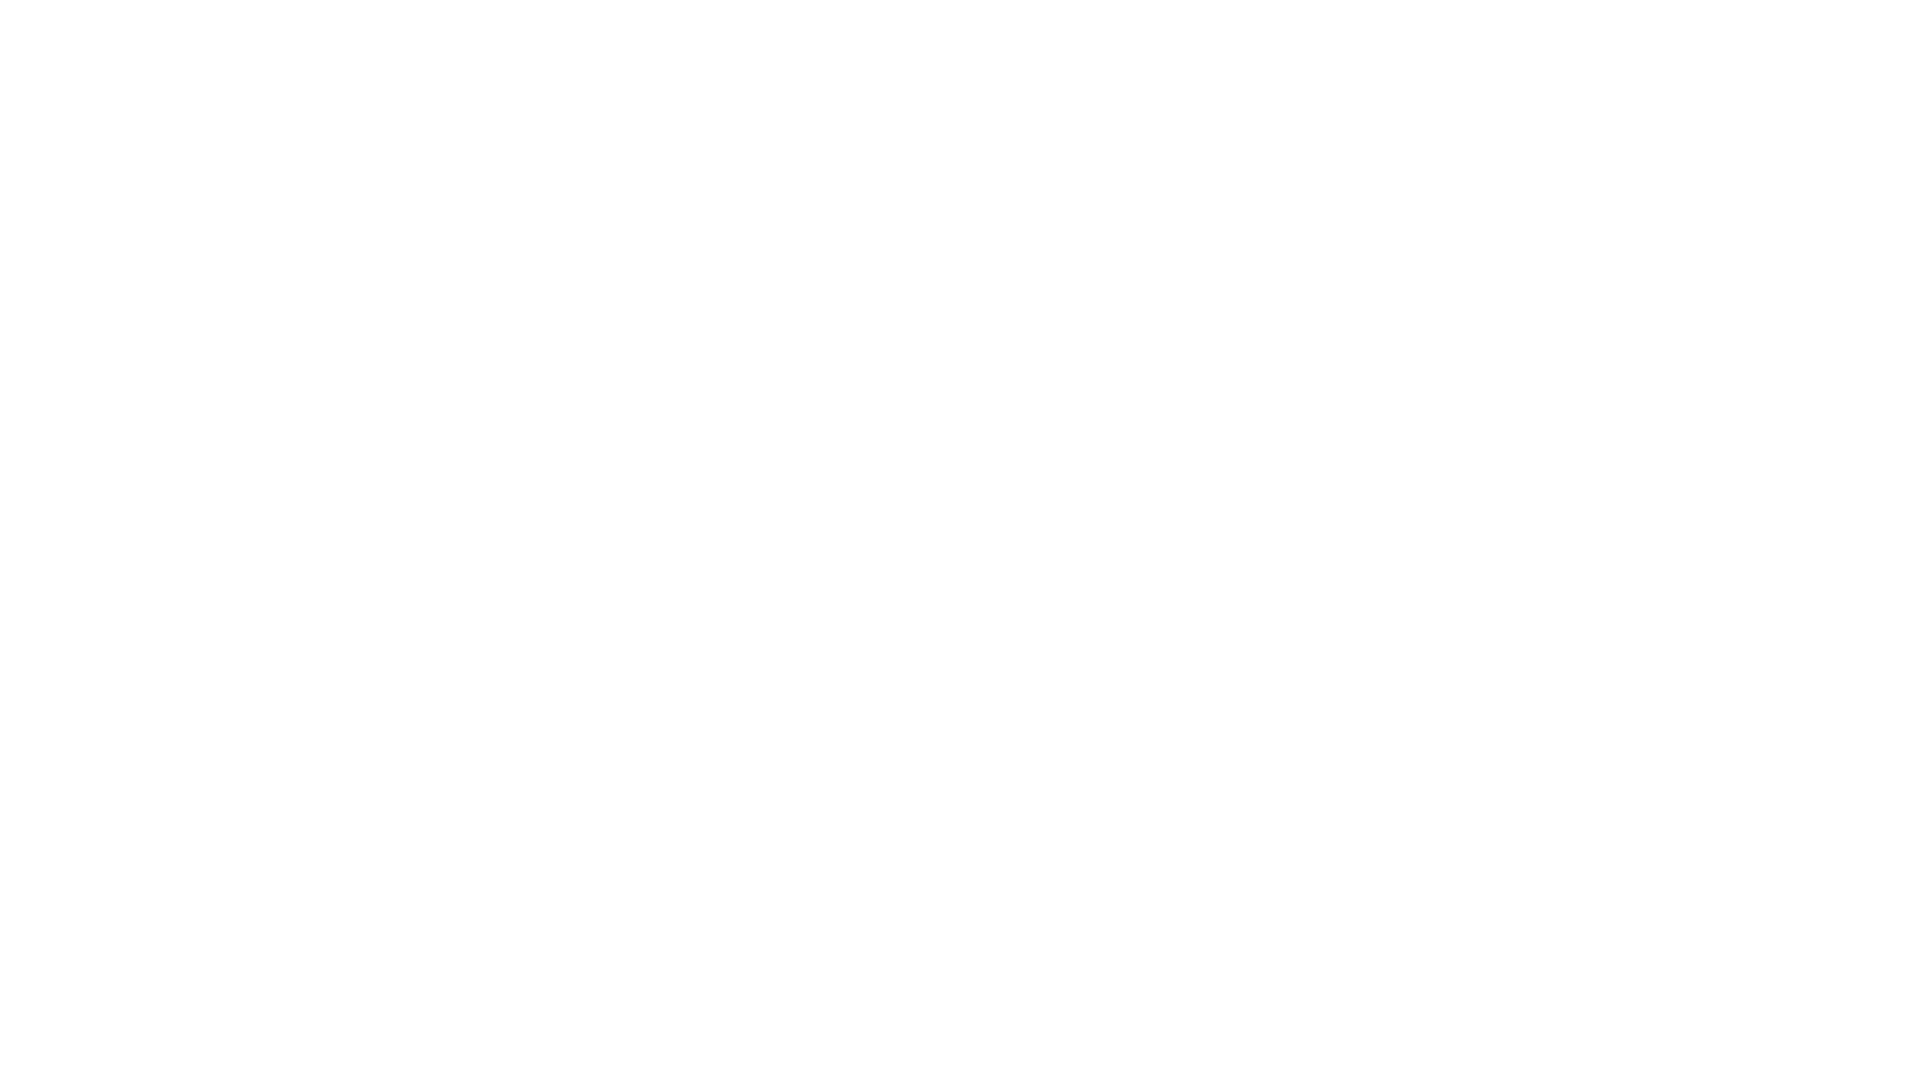 wwwm engineering